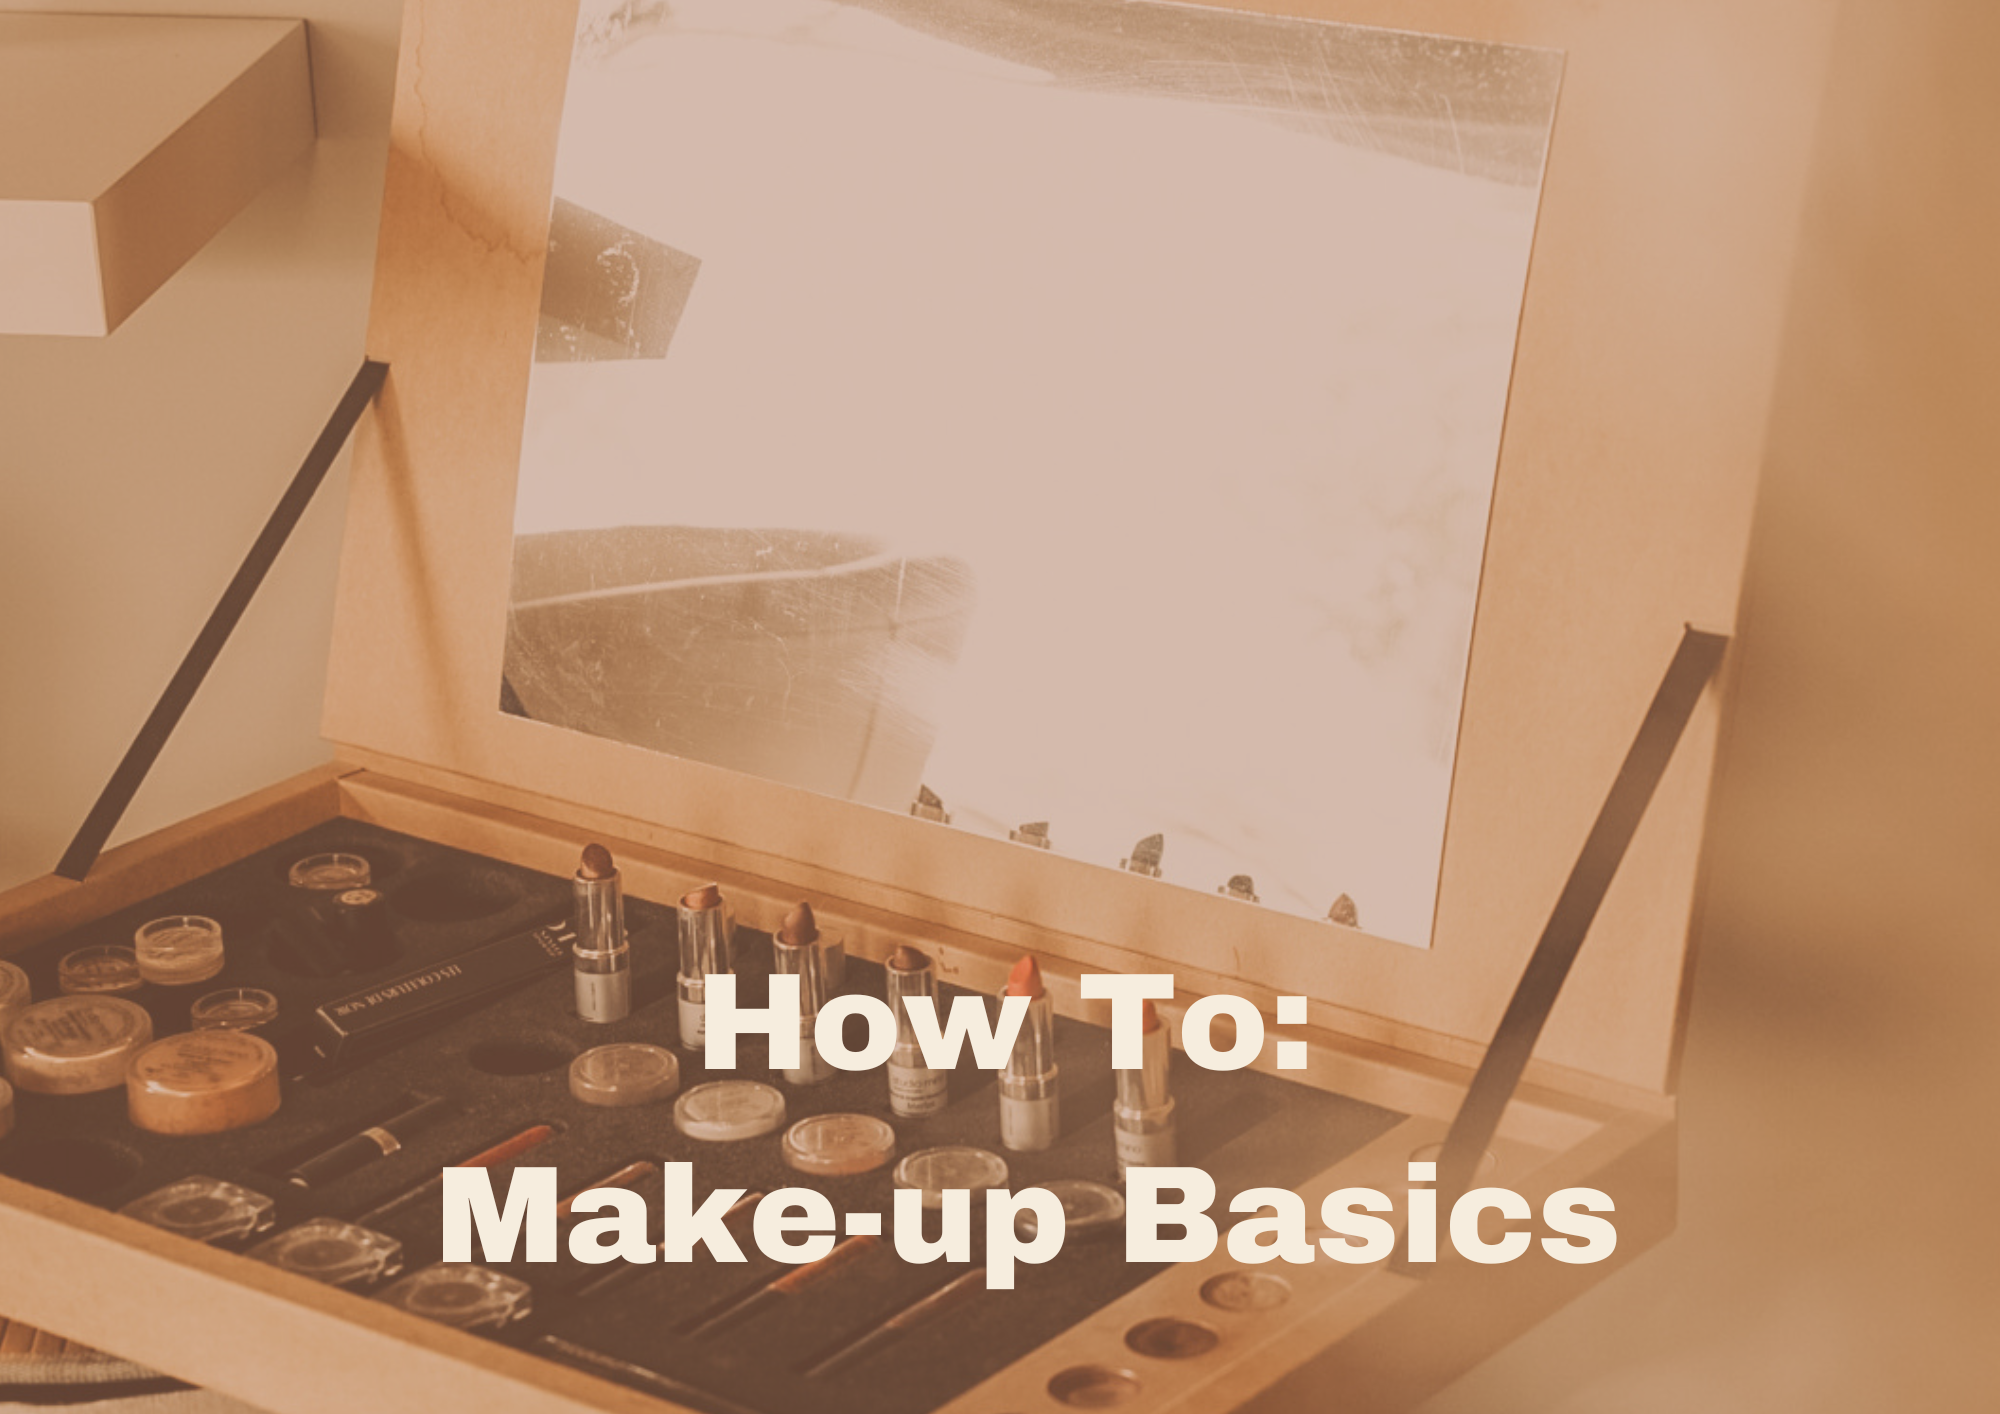 Video laden: make-up basics natural